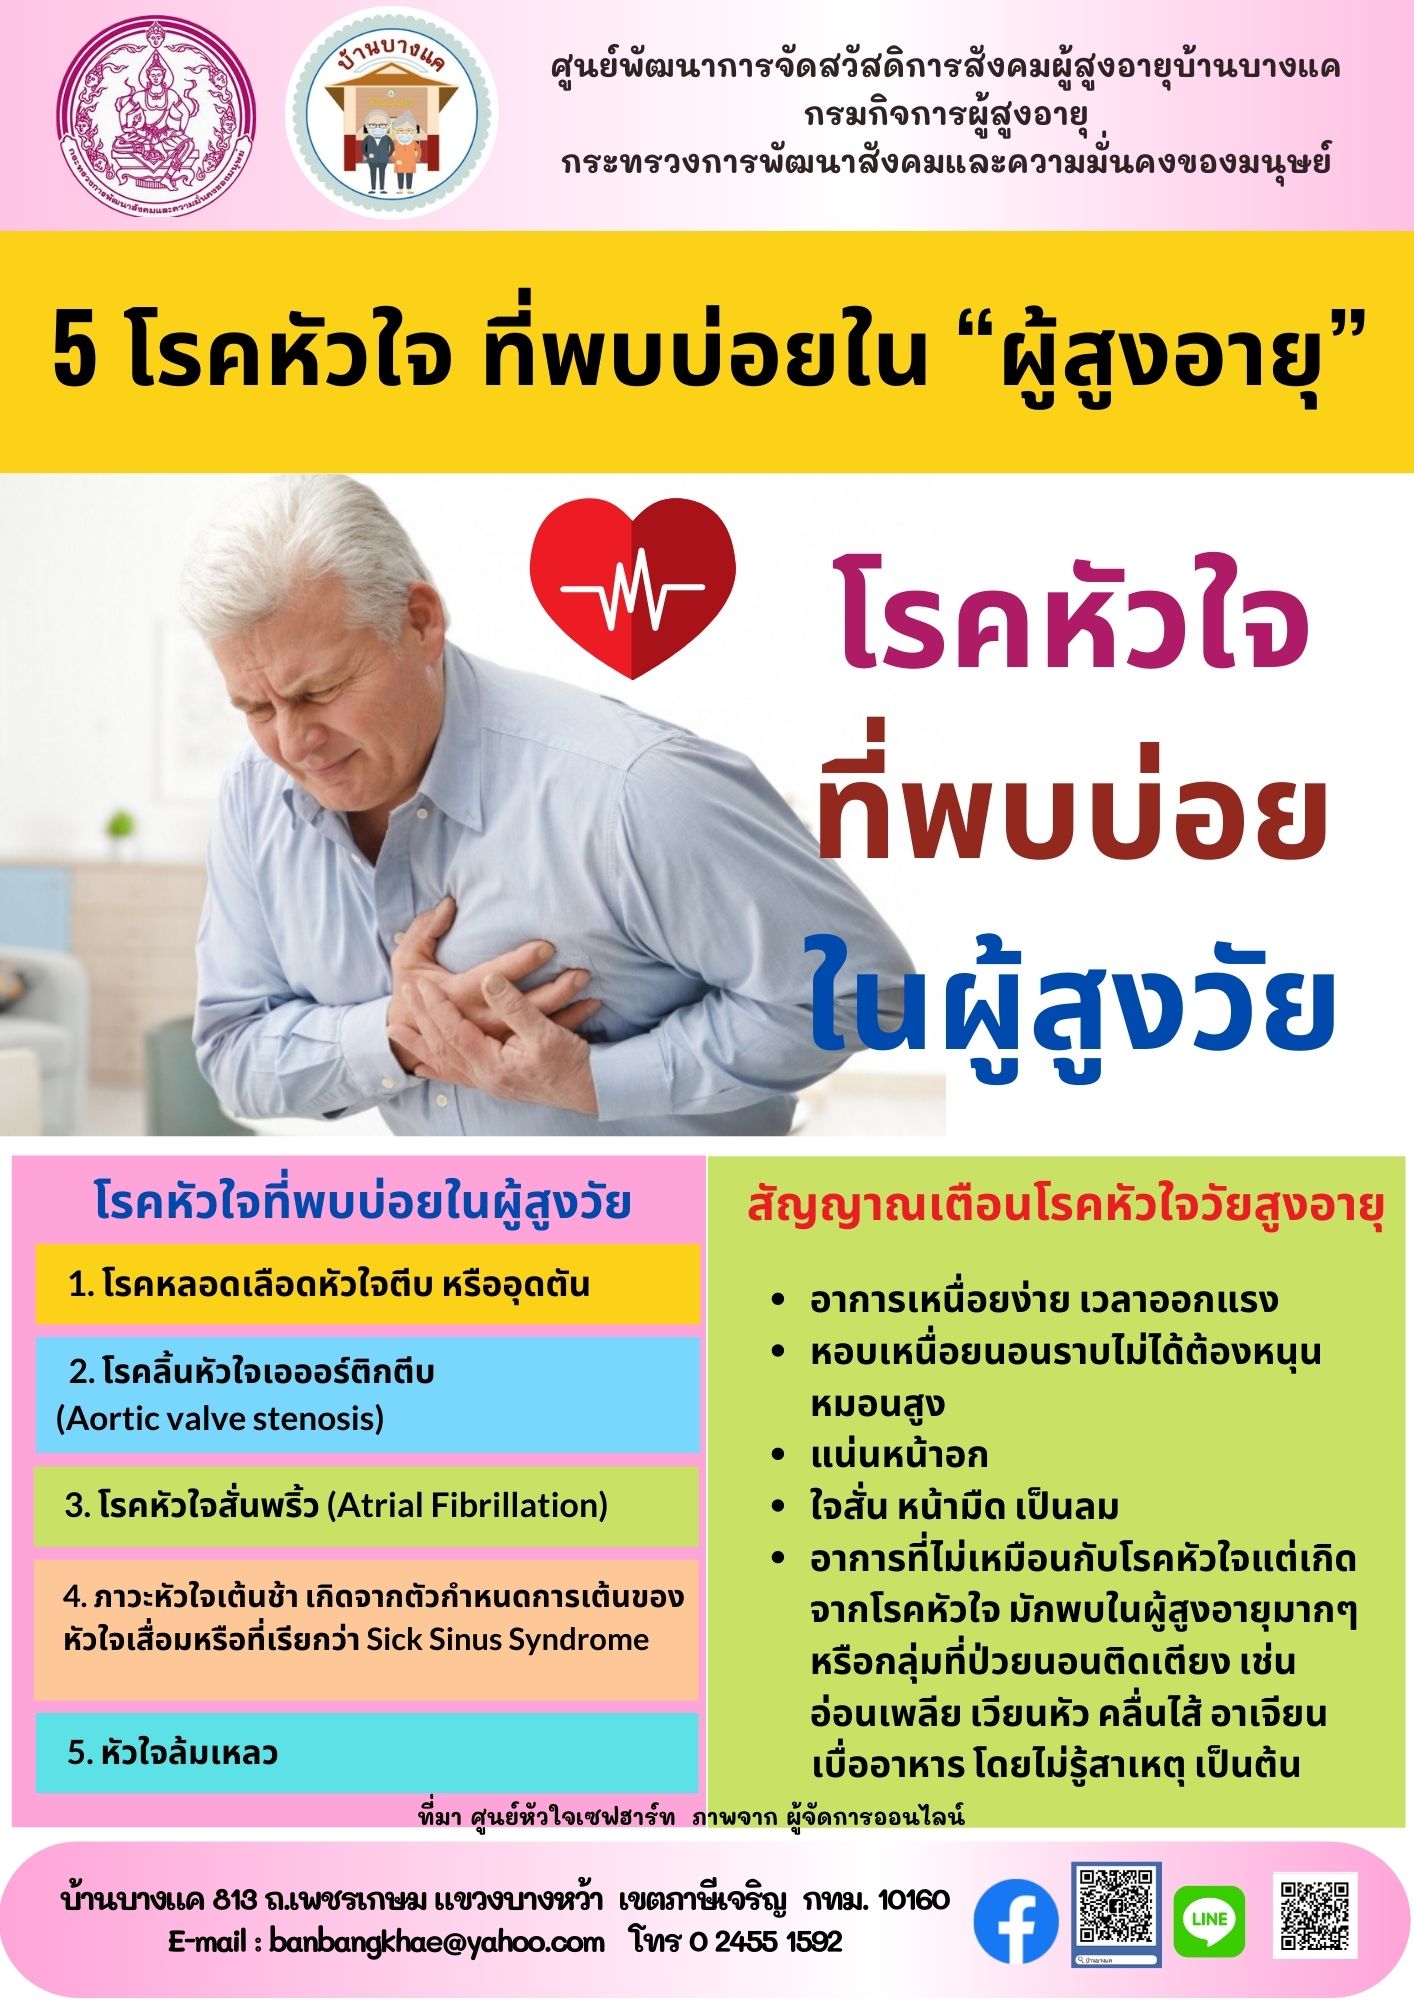 5 โรคหัวใจ ที่พบบ่อยใน E-library เดือนมกราคม 2565